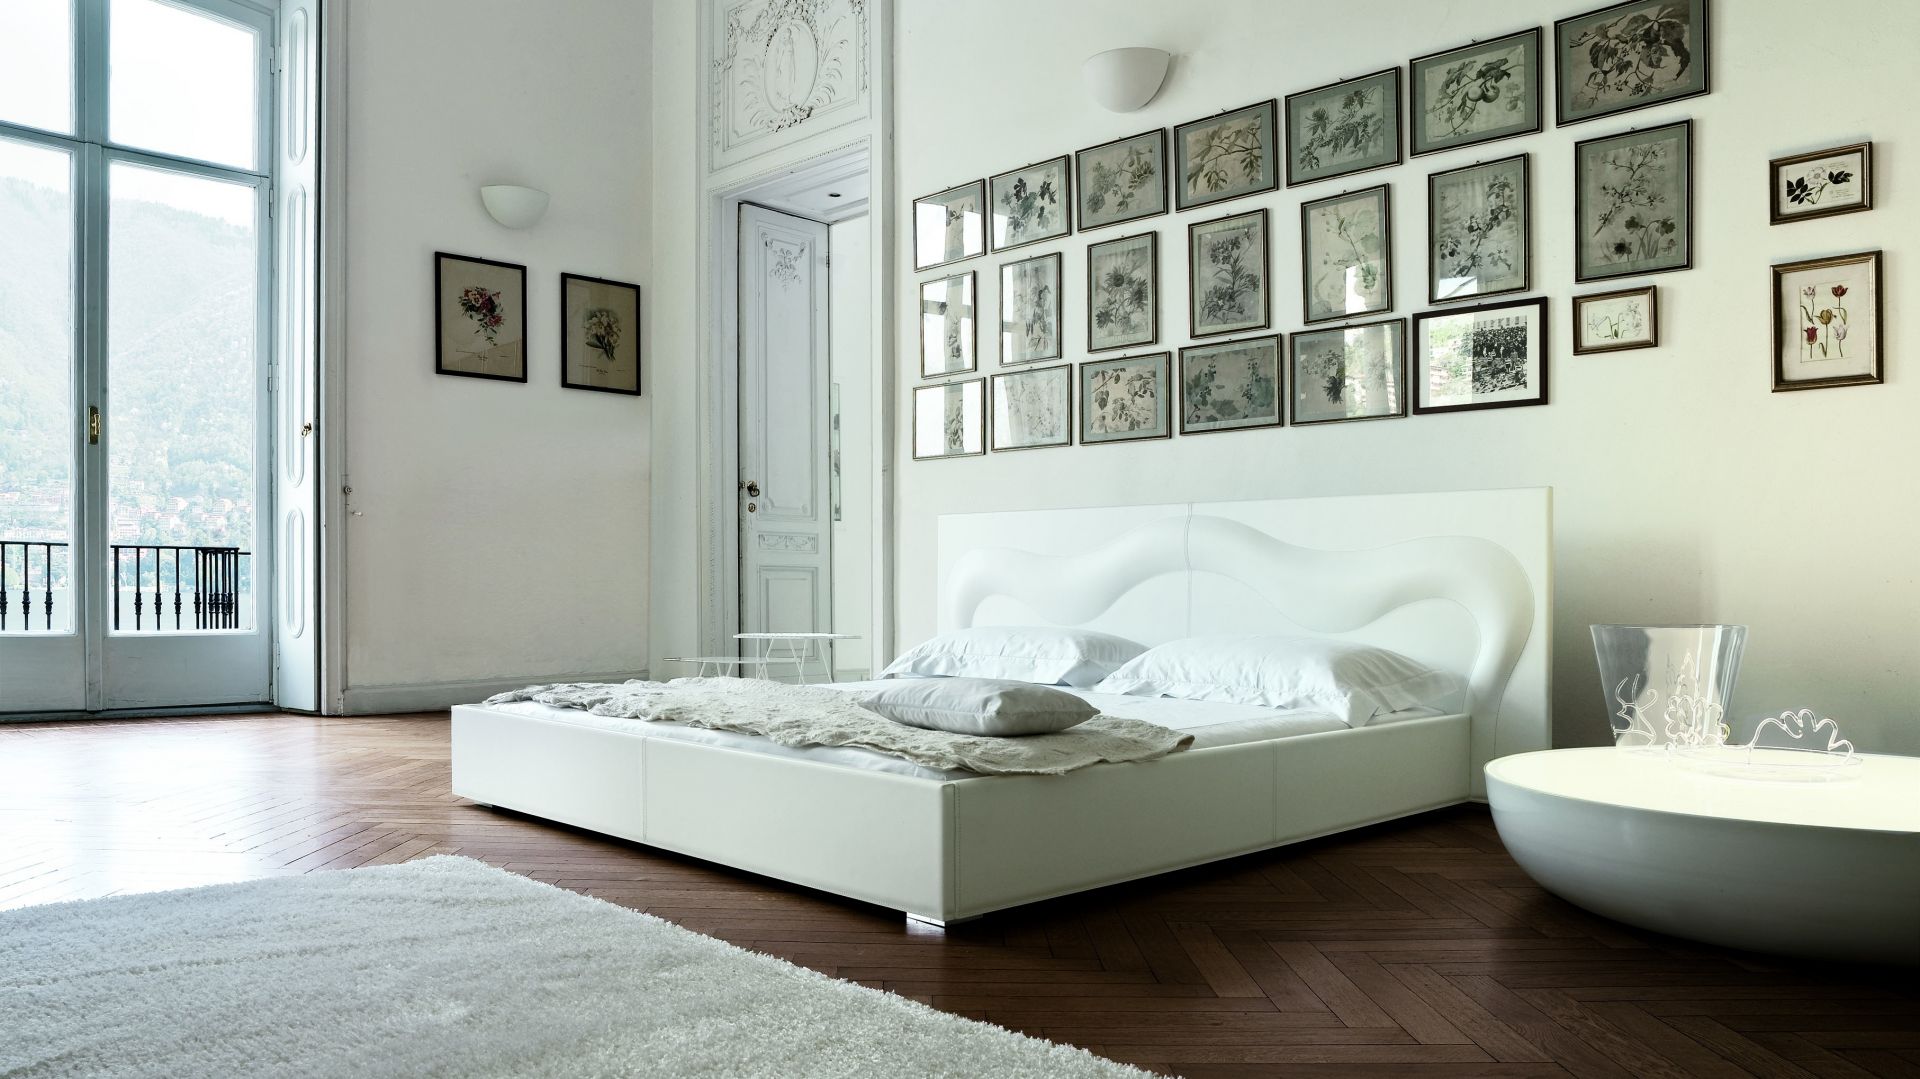 Biała sypialnia - postaw na elegancję i klimat relaksu!